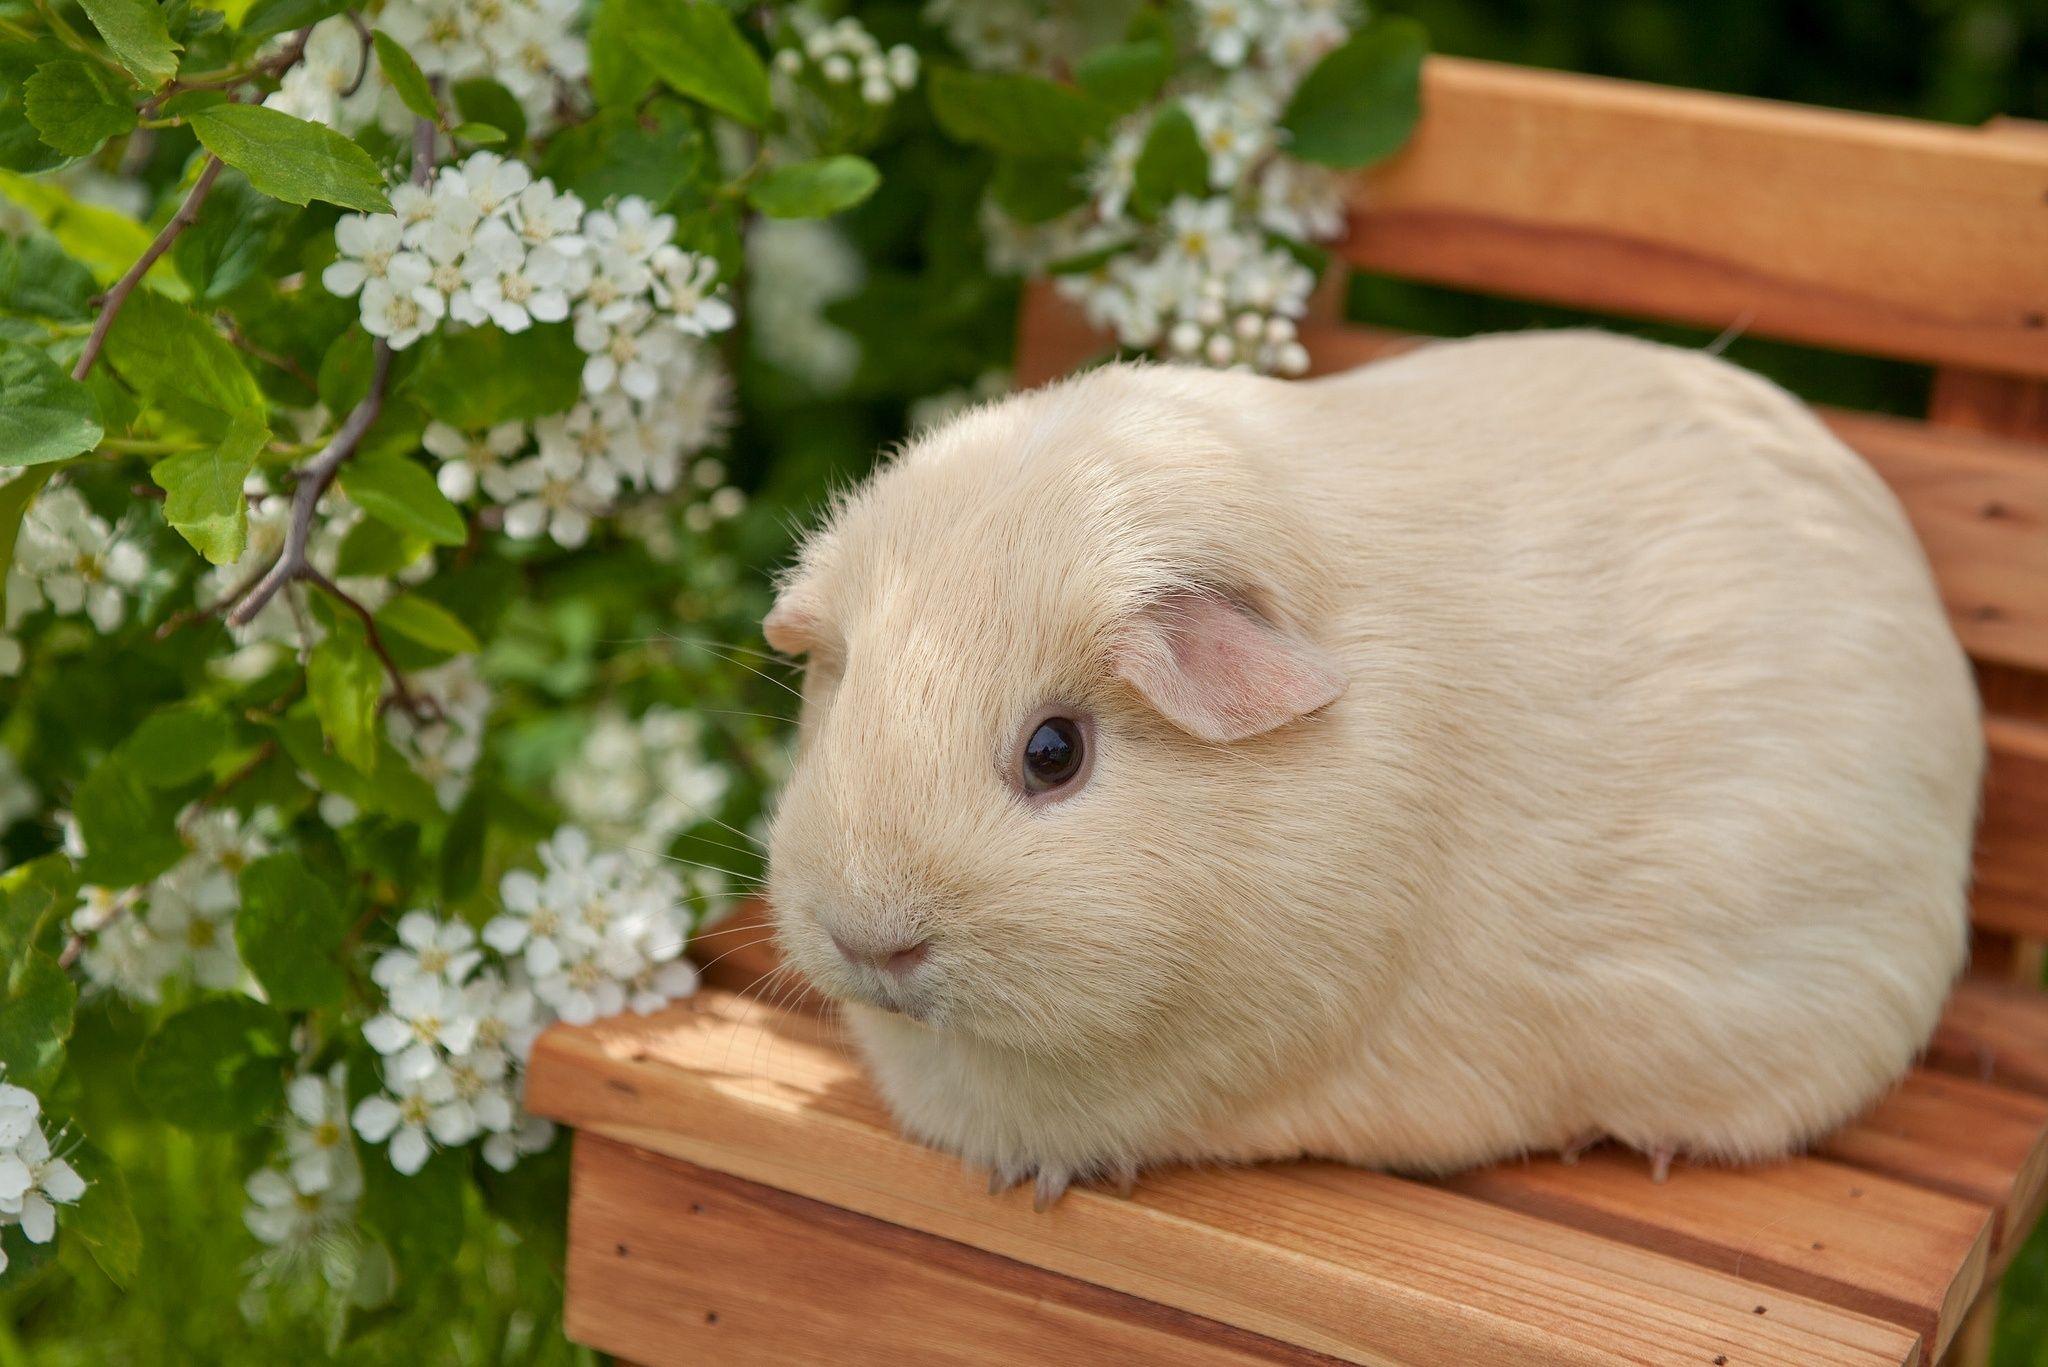  دانلود عکس بسیار قشنگ و جالب از خوکچه هندی با پشم های سفید 